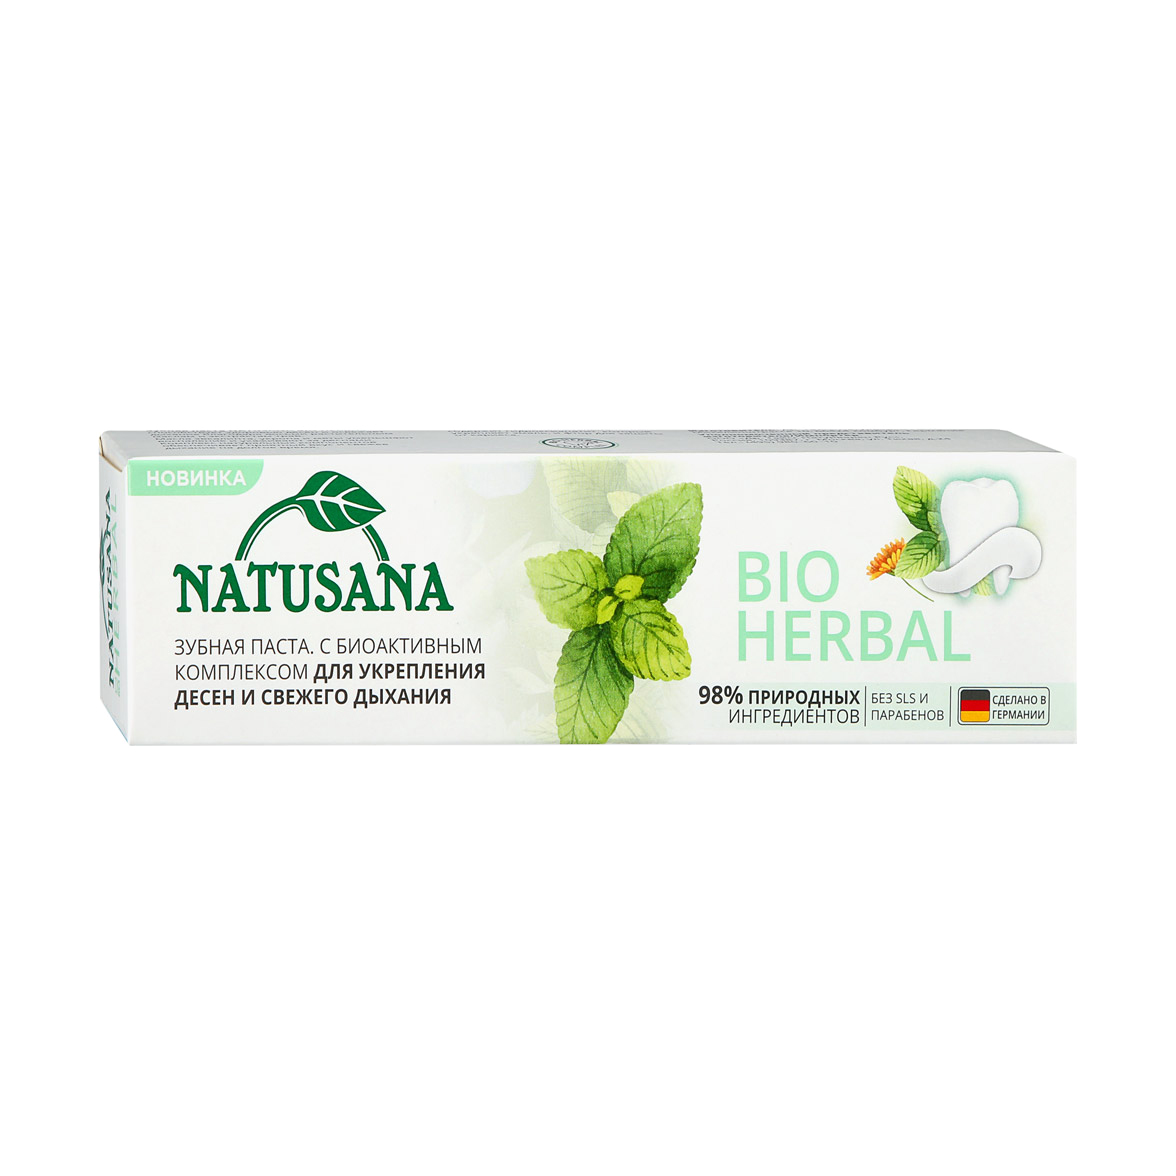 Зубная паста Natusana bio herbal 100 мл зубная паста herbal клюква и витамины 150 г